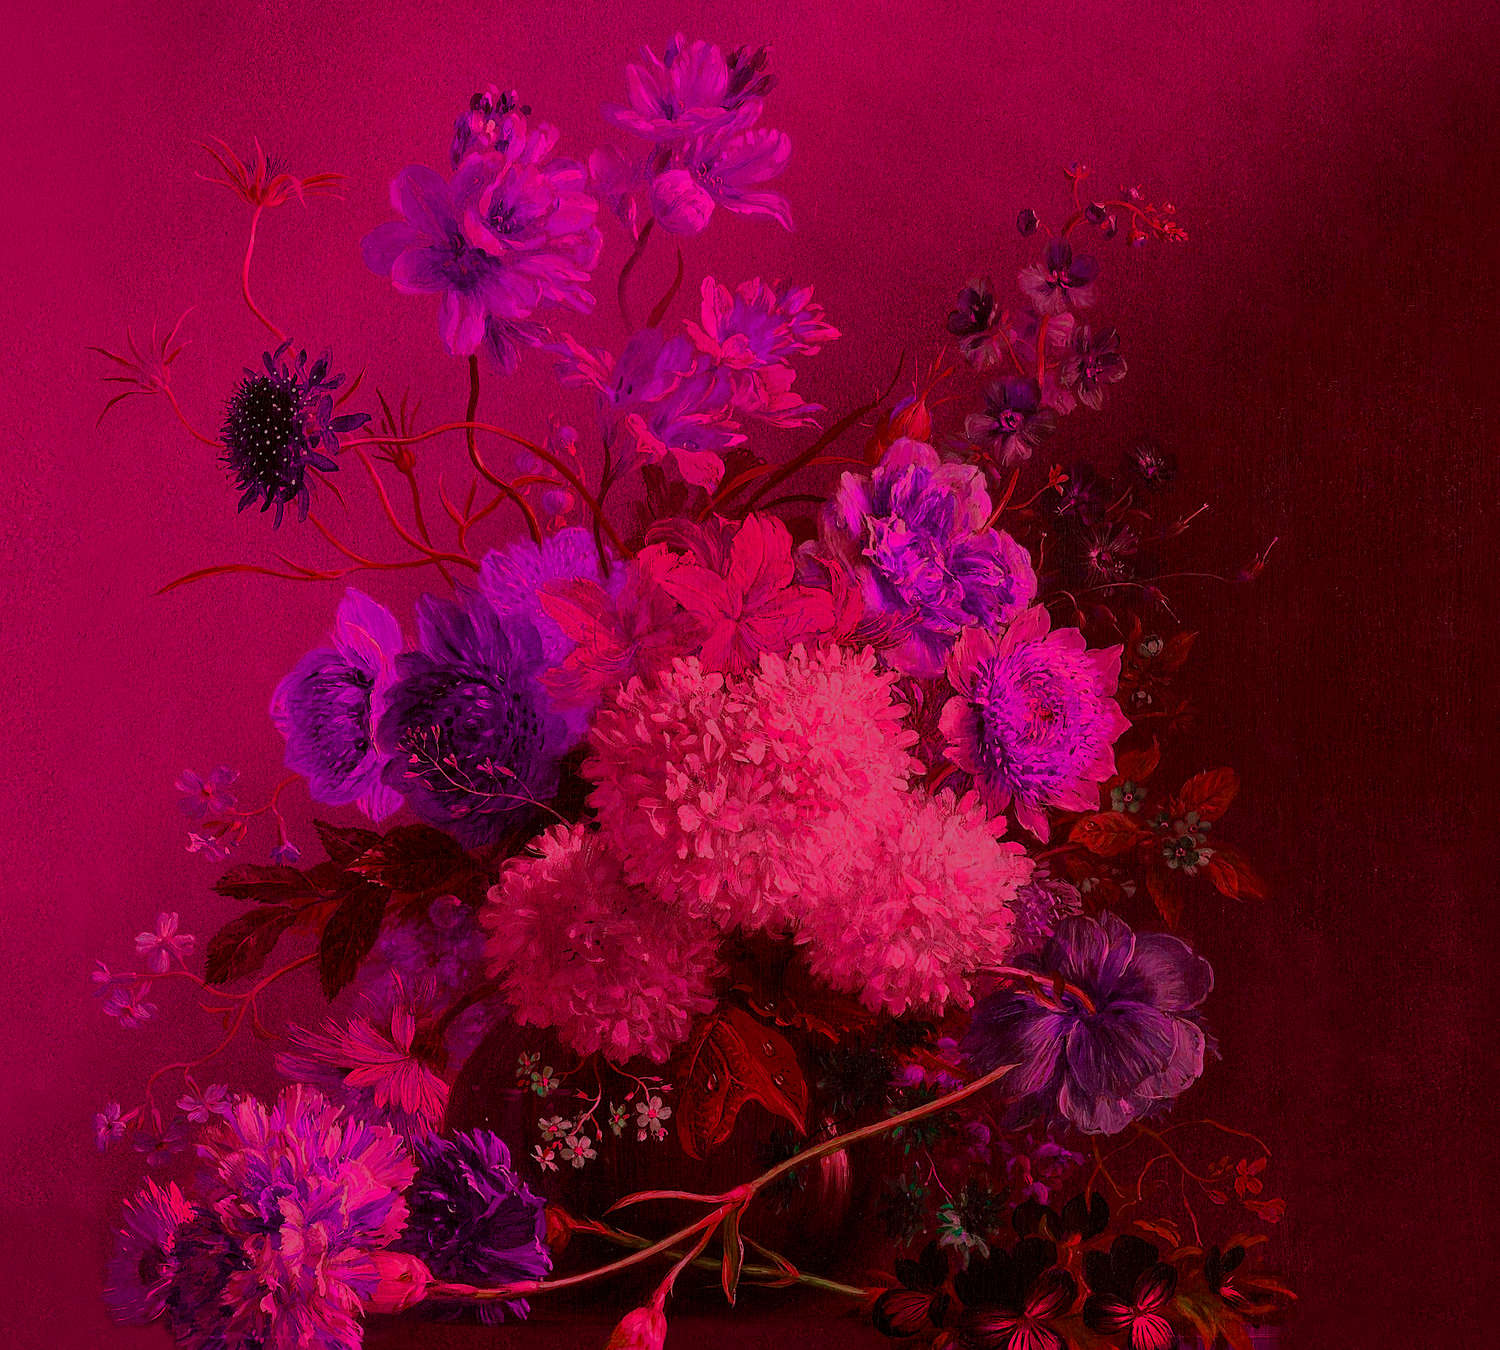             Carta da parati neon con natura morta di fiori - Viola, Rosa
        